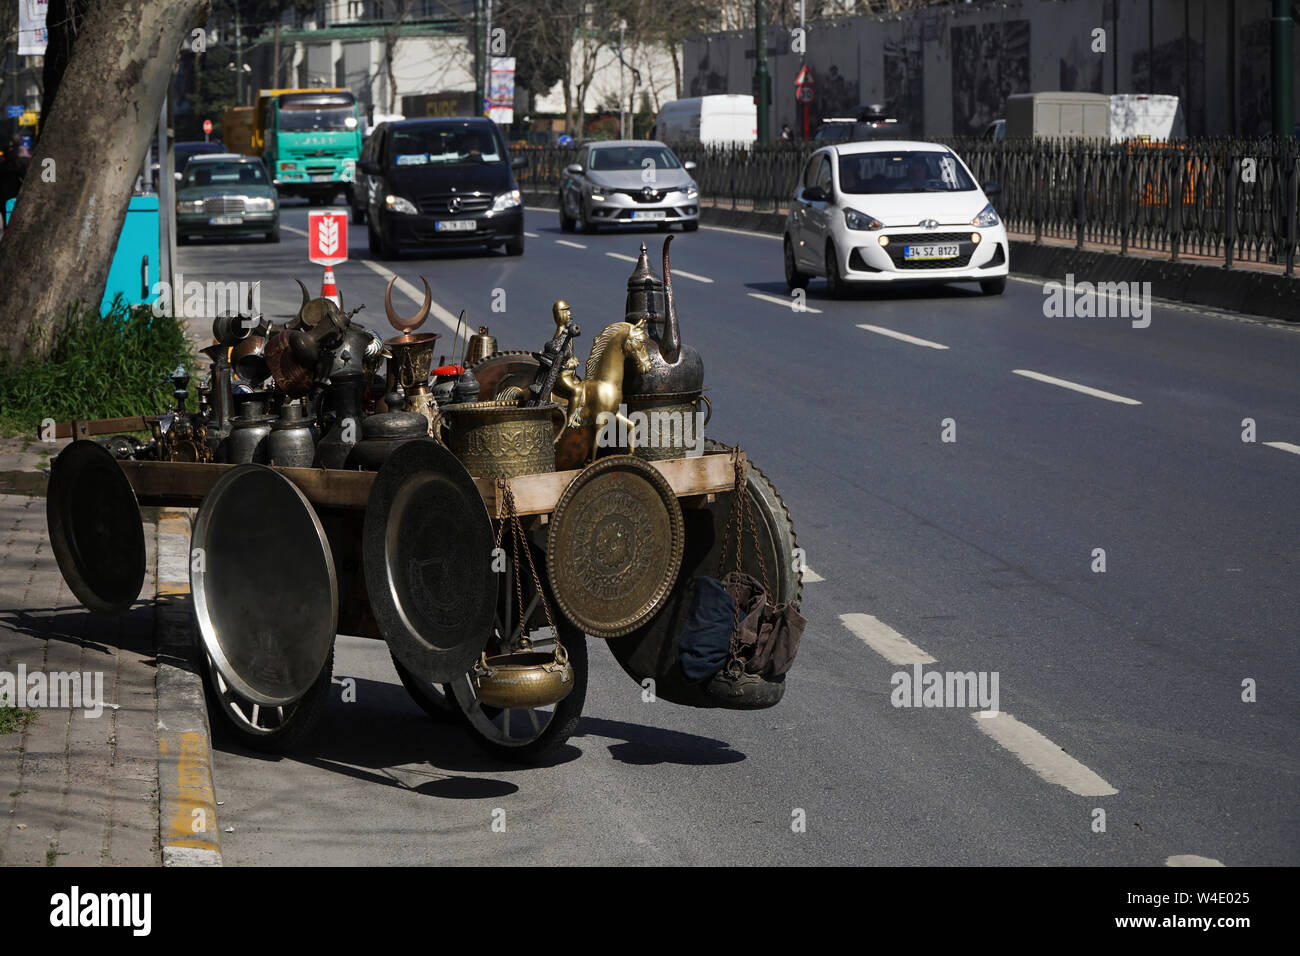 Istanbul, Türkei - April 5, 2018: Es gibt viele antike Gegenstände aus Metall auf eine Schubkarre auf der Straße mit Fahrzeugen. Wie Tabletts, Schüsseln und Krüge. Stockfoto